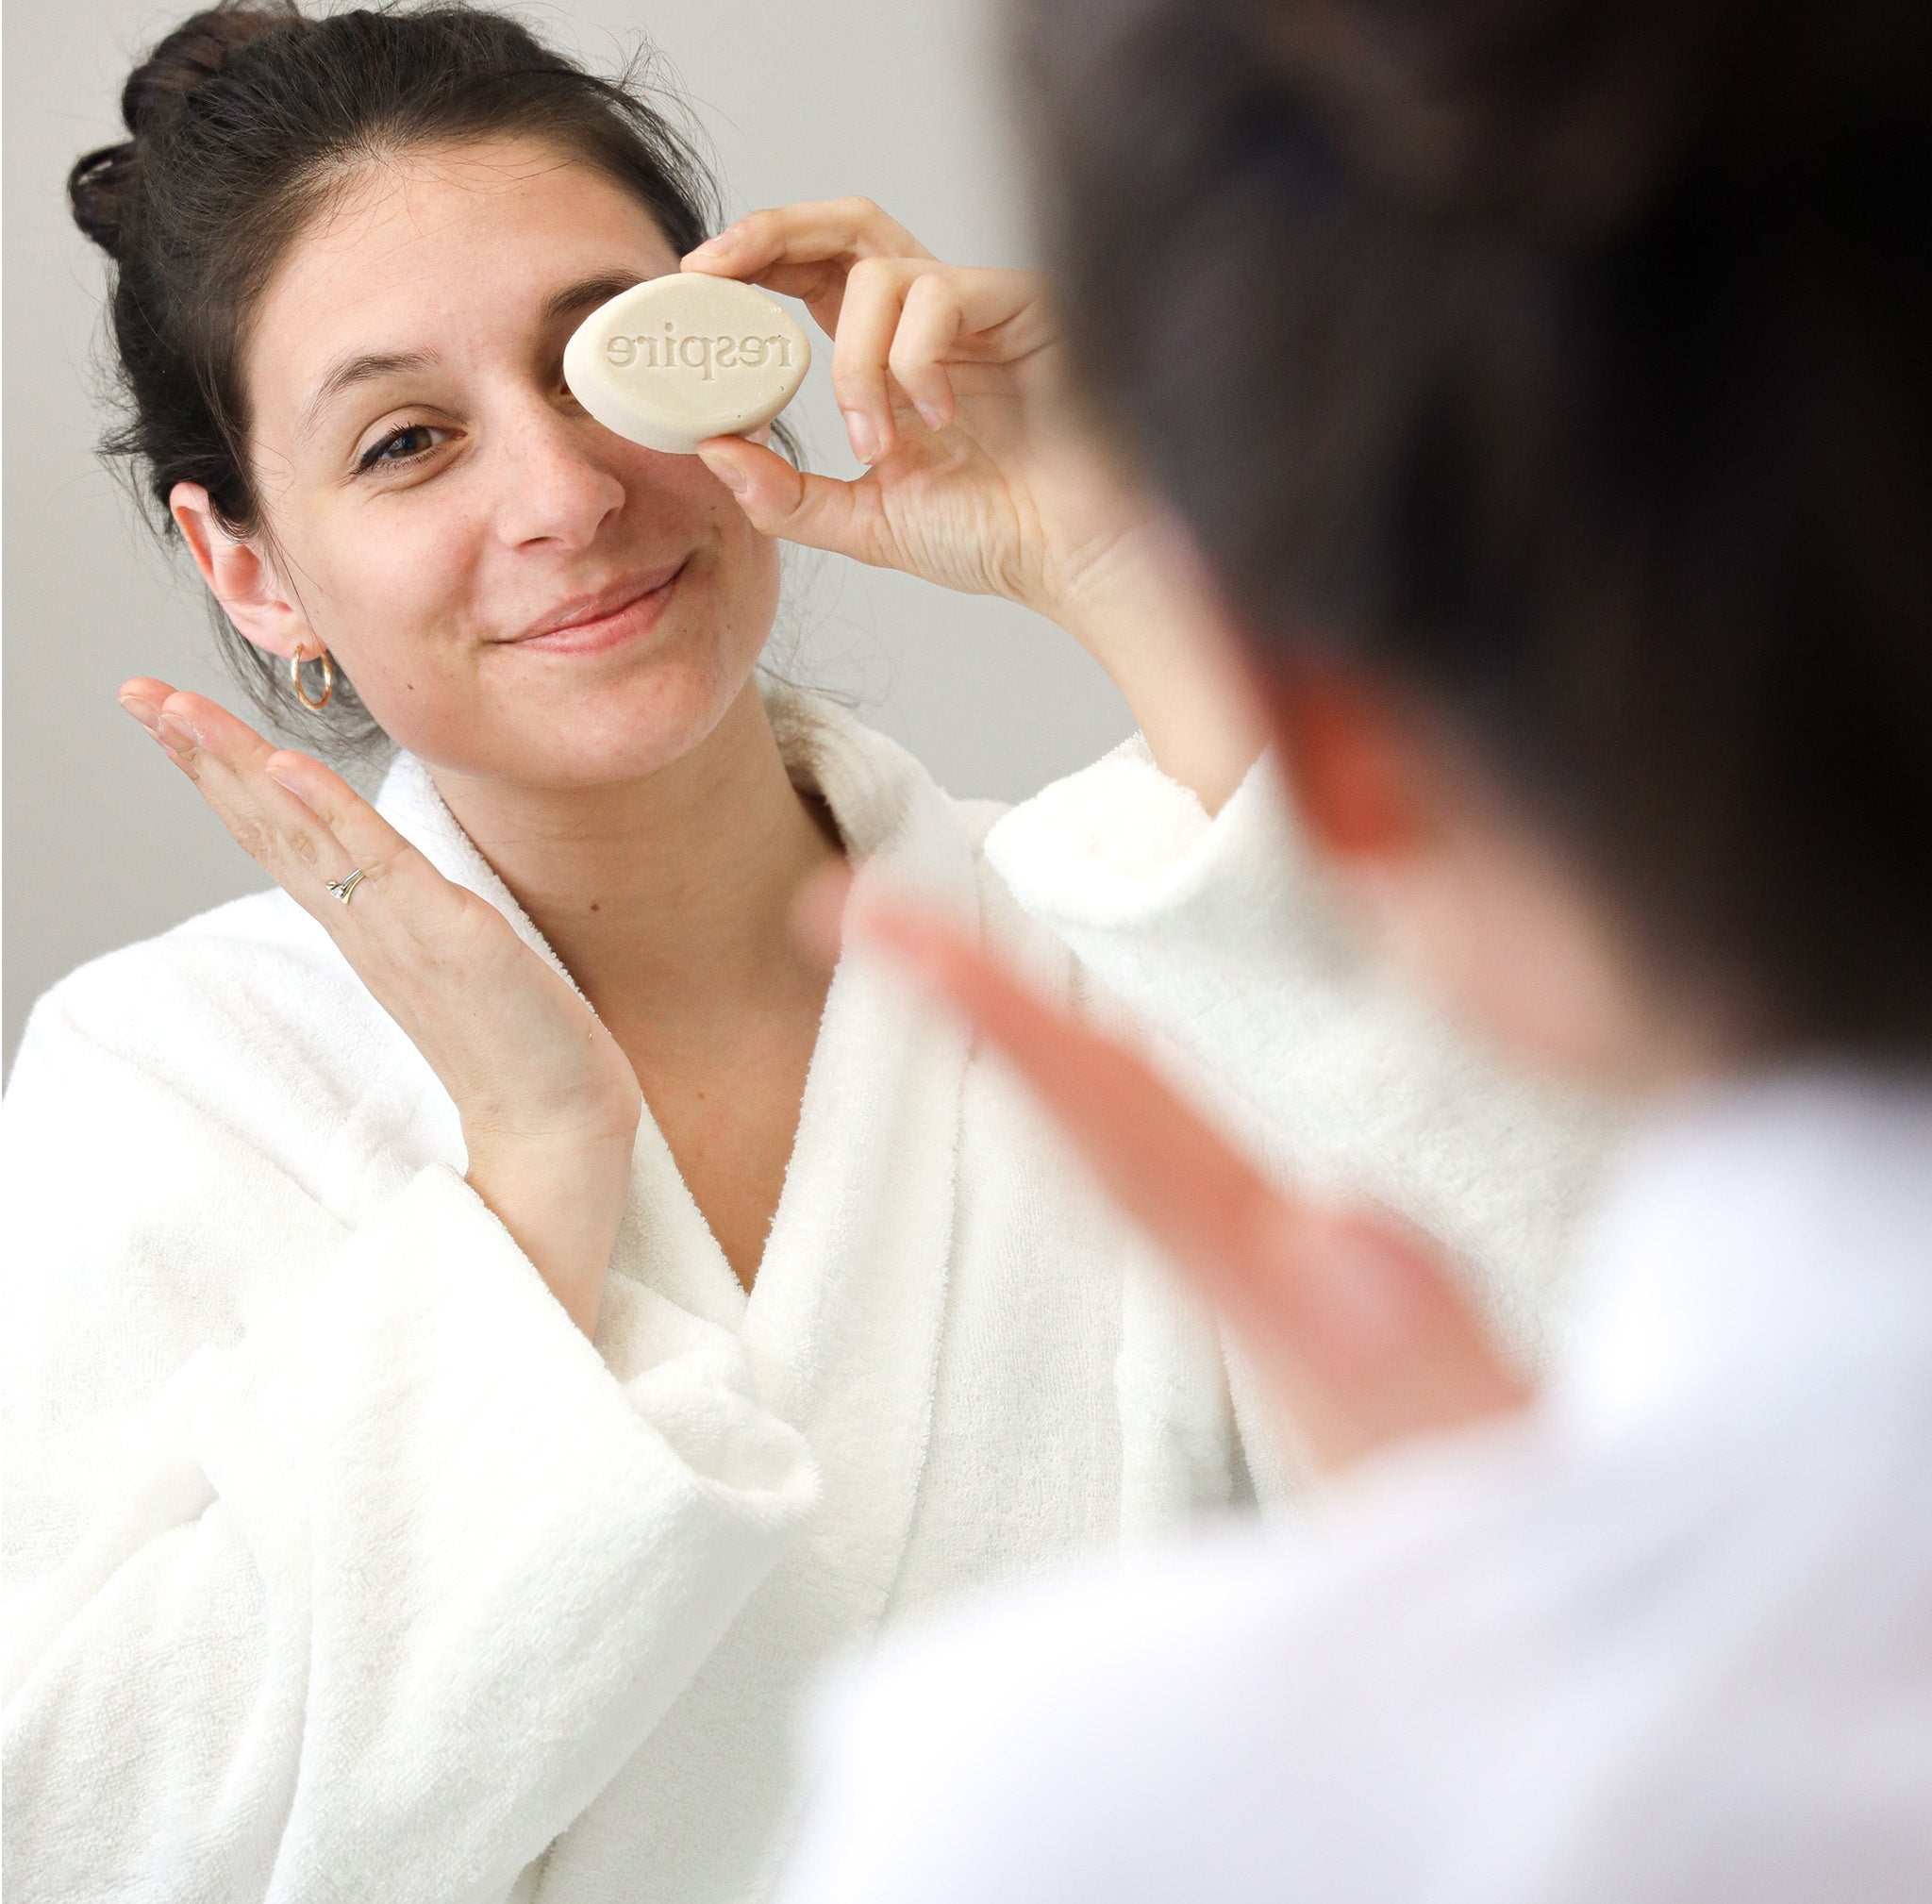 Utilisation du nettoyant visage sur la peau du visage d'une femme en peignoir